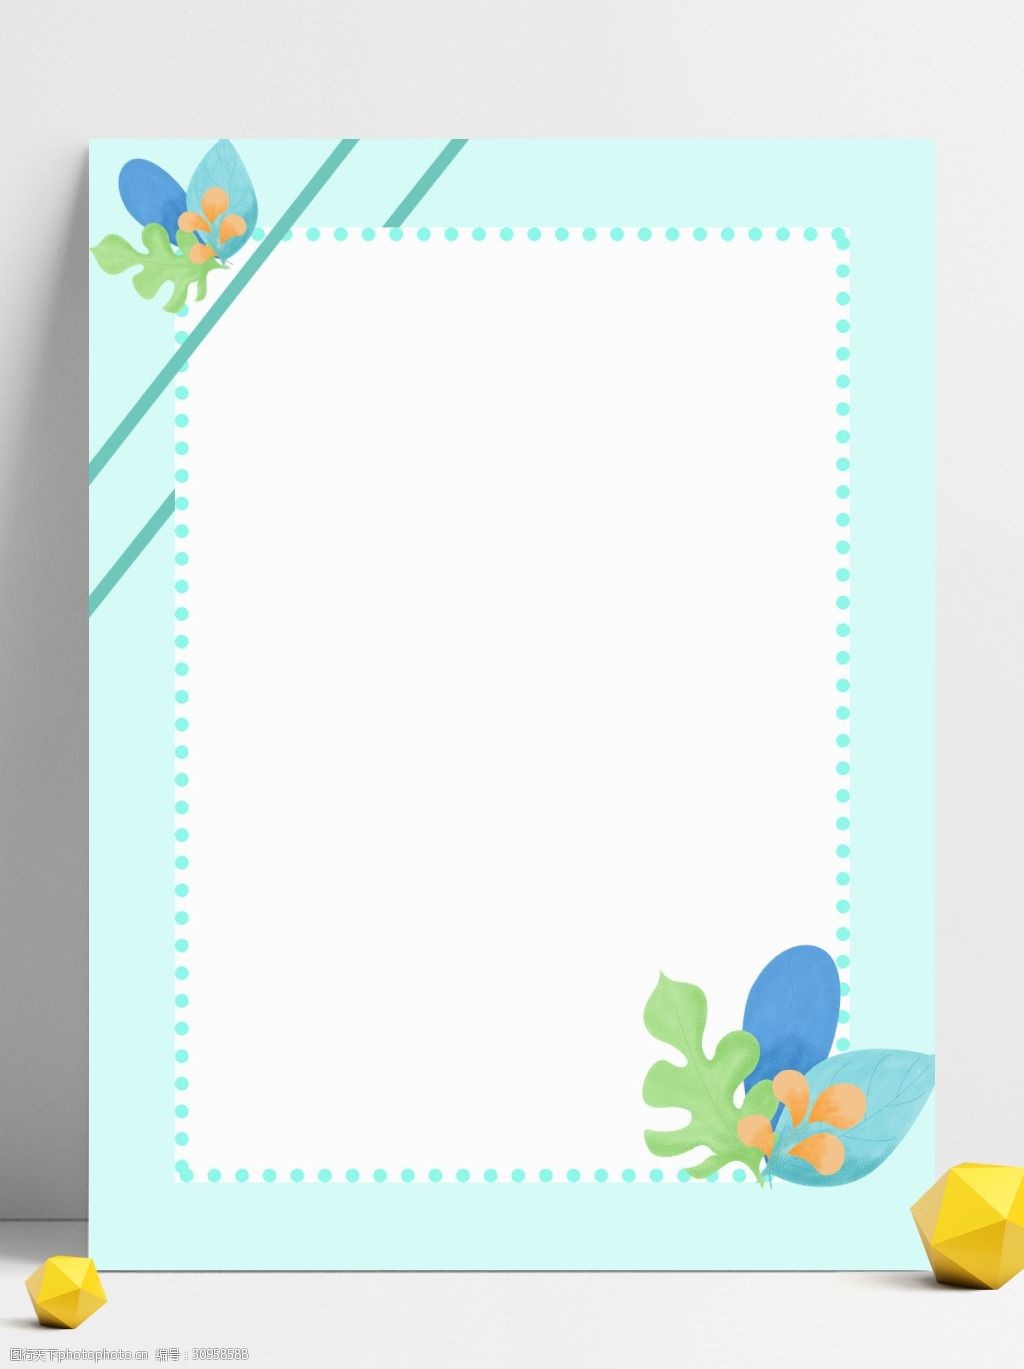 关键词:小清新蓝色花框背景 植物 小清新 简约 边框 花朵 鲜花绿植